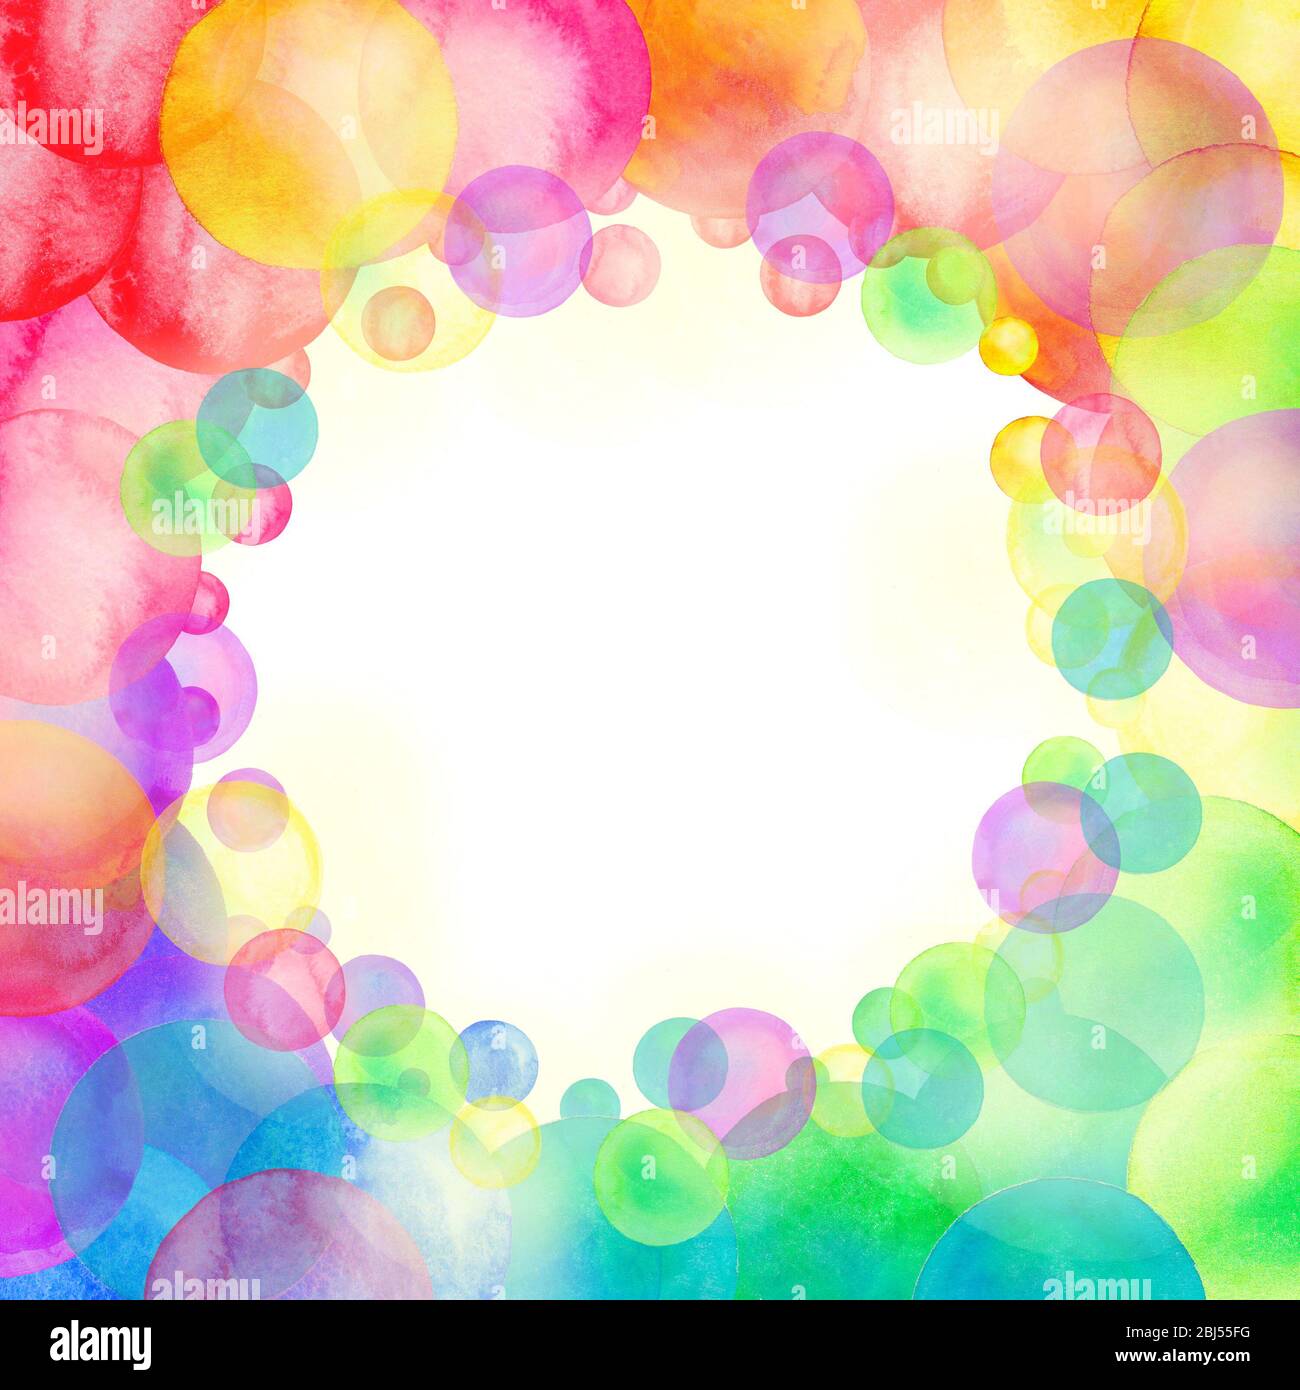 Imagen vectorial de manchas de agua con colores pastel en un fondo